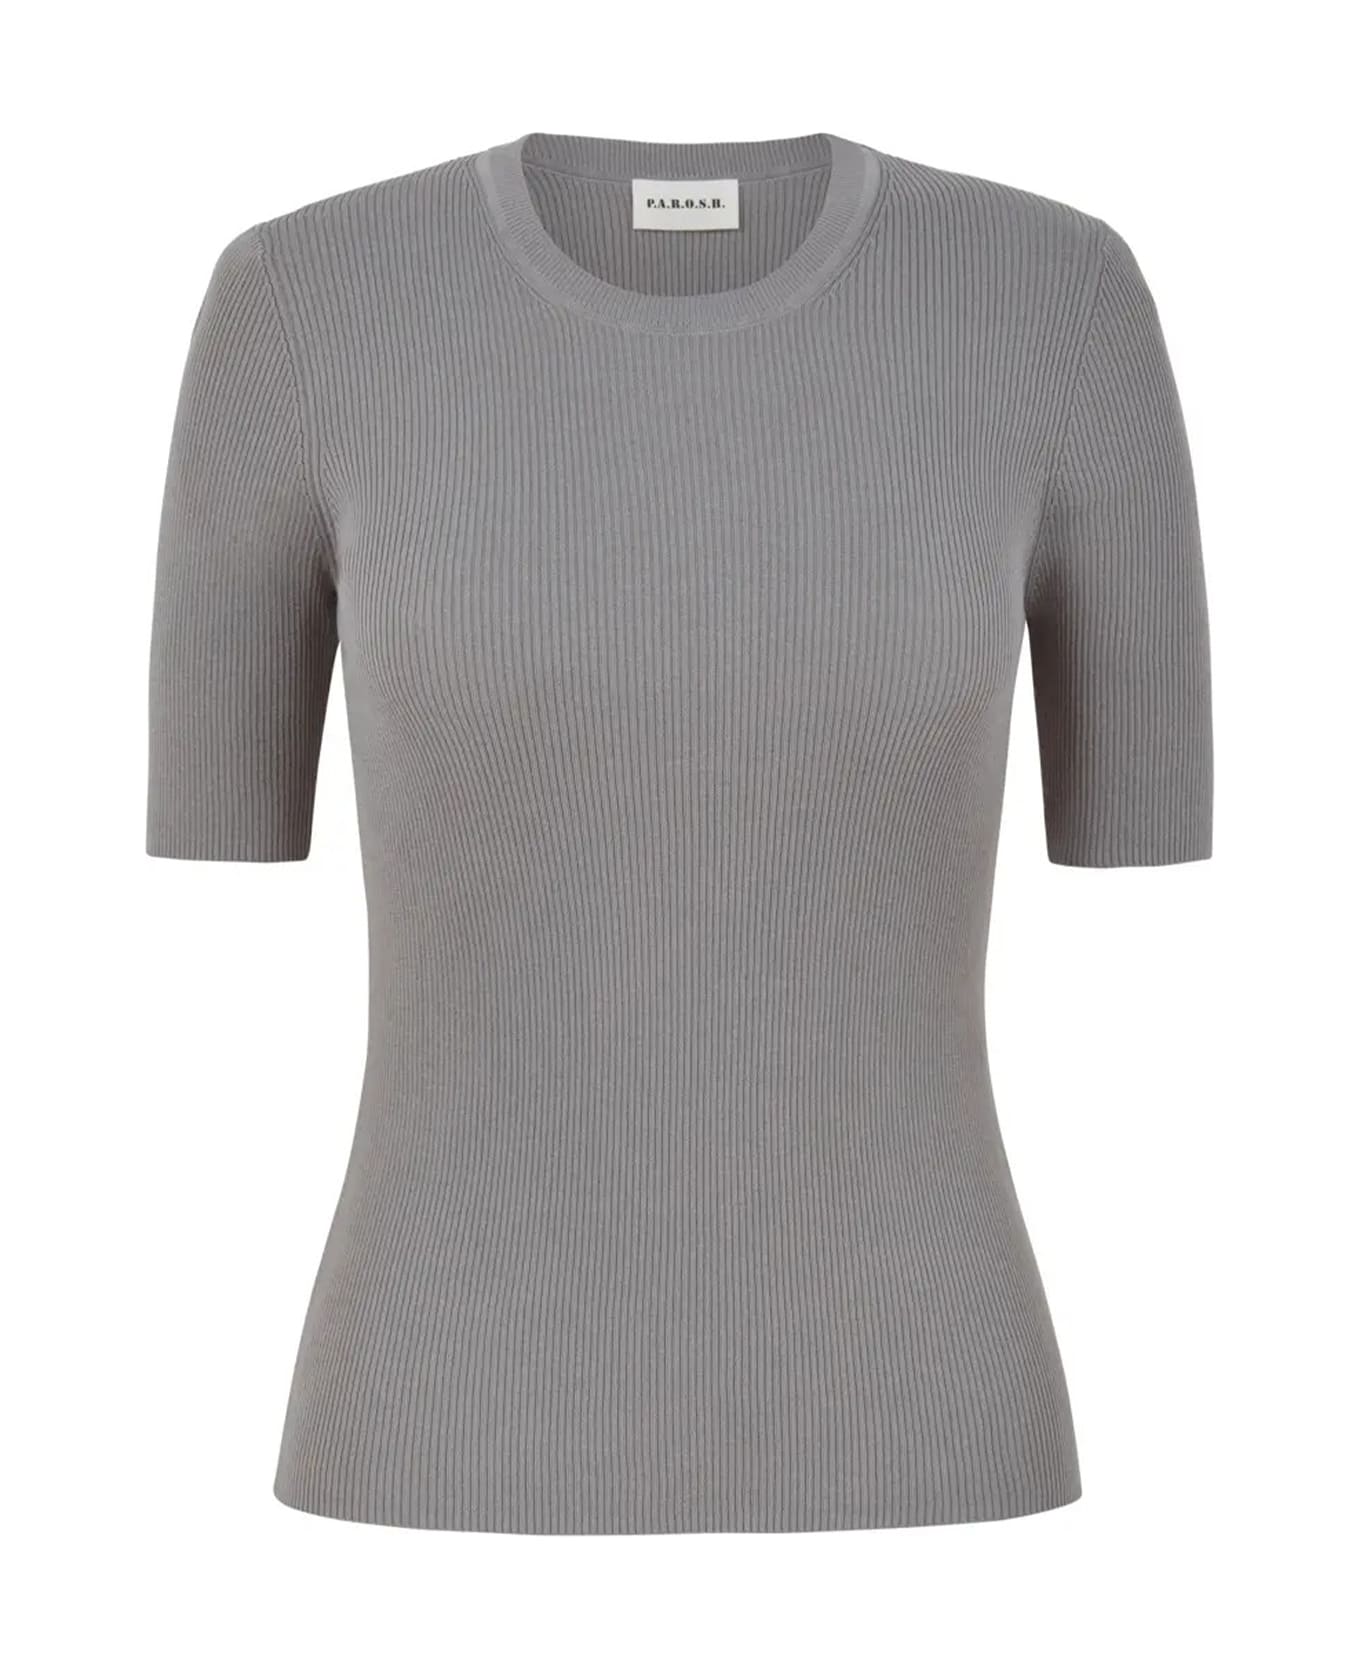 Parosh Gray Short-sleeved Shirt - GRIGIO